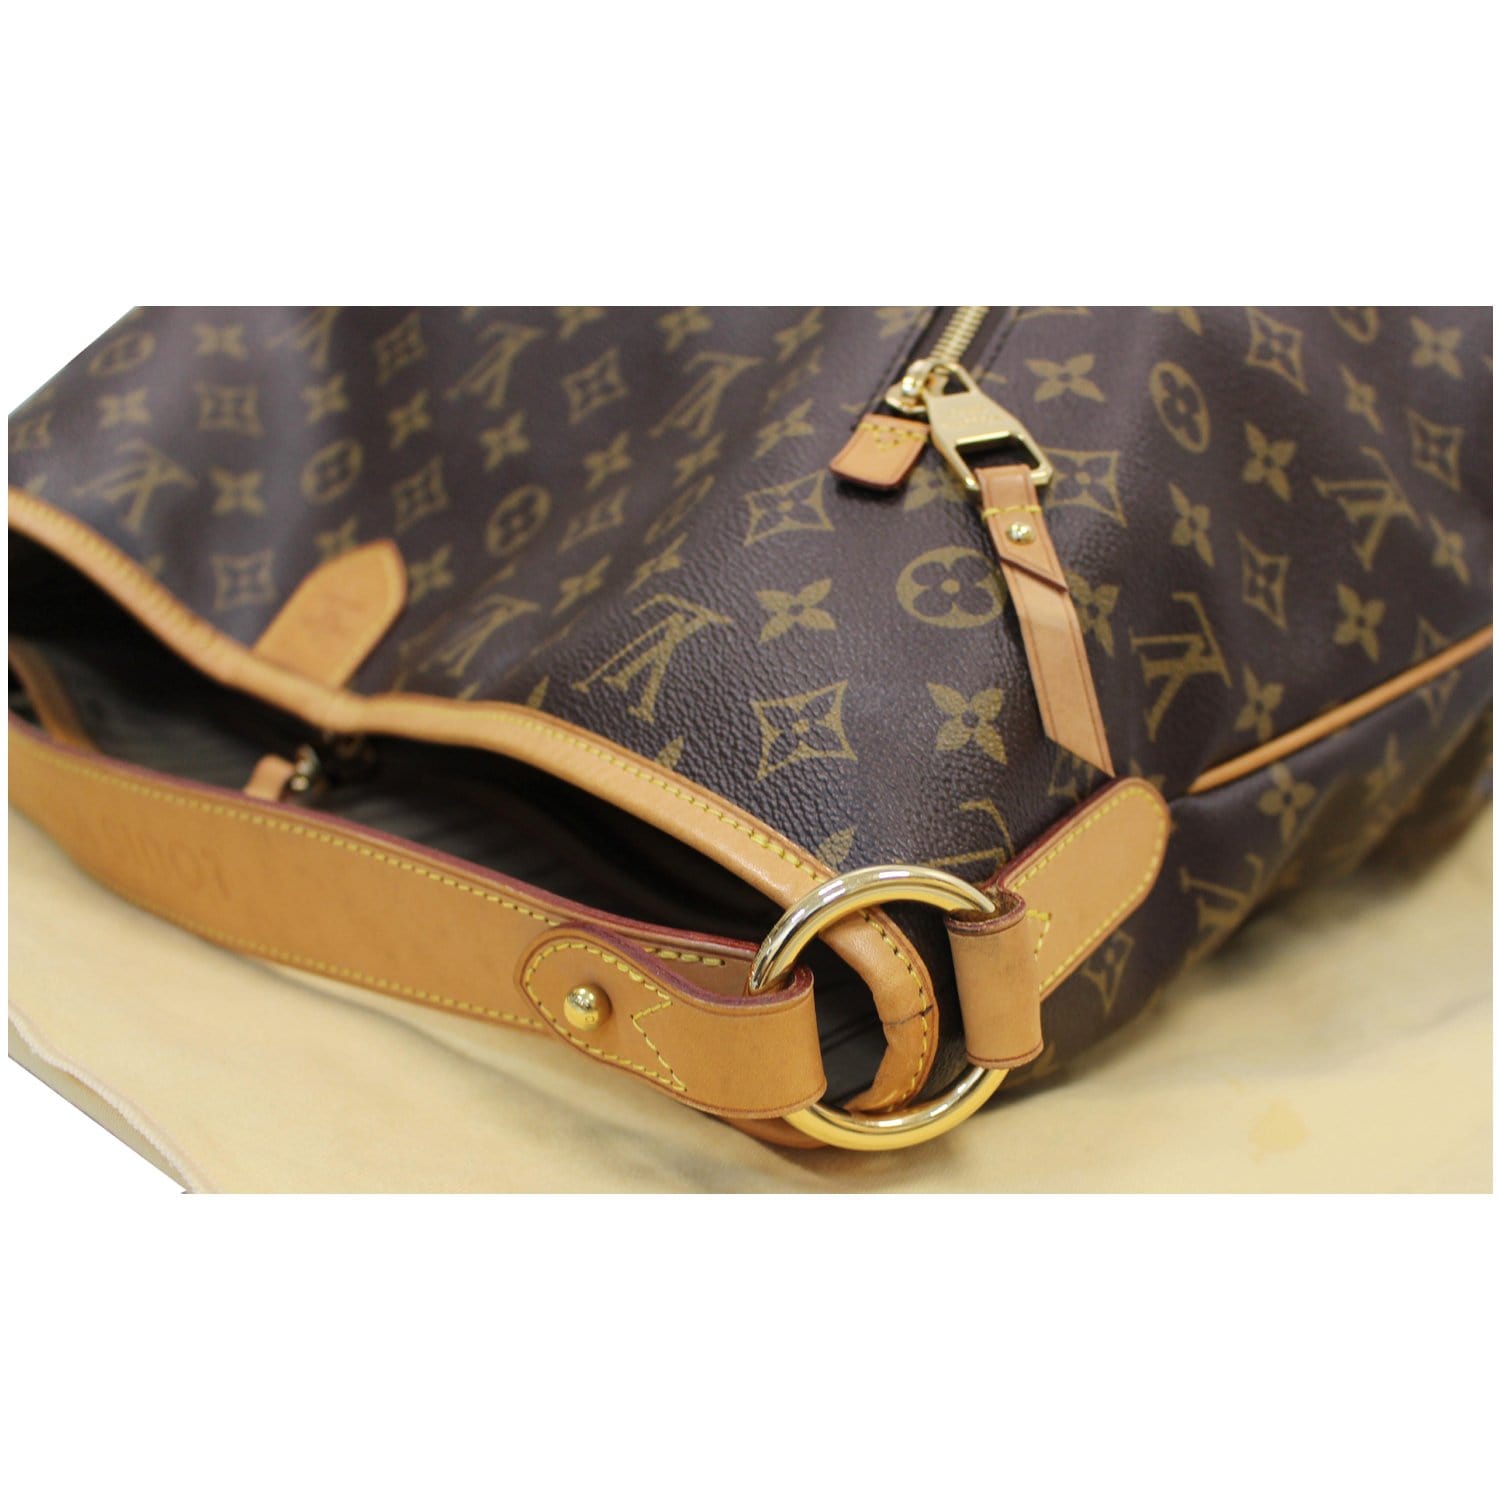 Delightful cloth handbag Louis Vuitton Brown in Cloth - 36503954